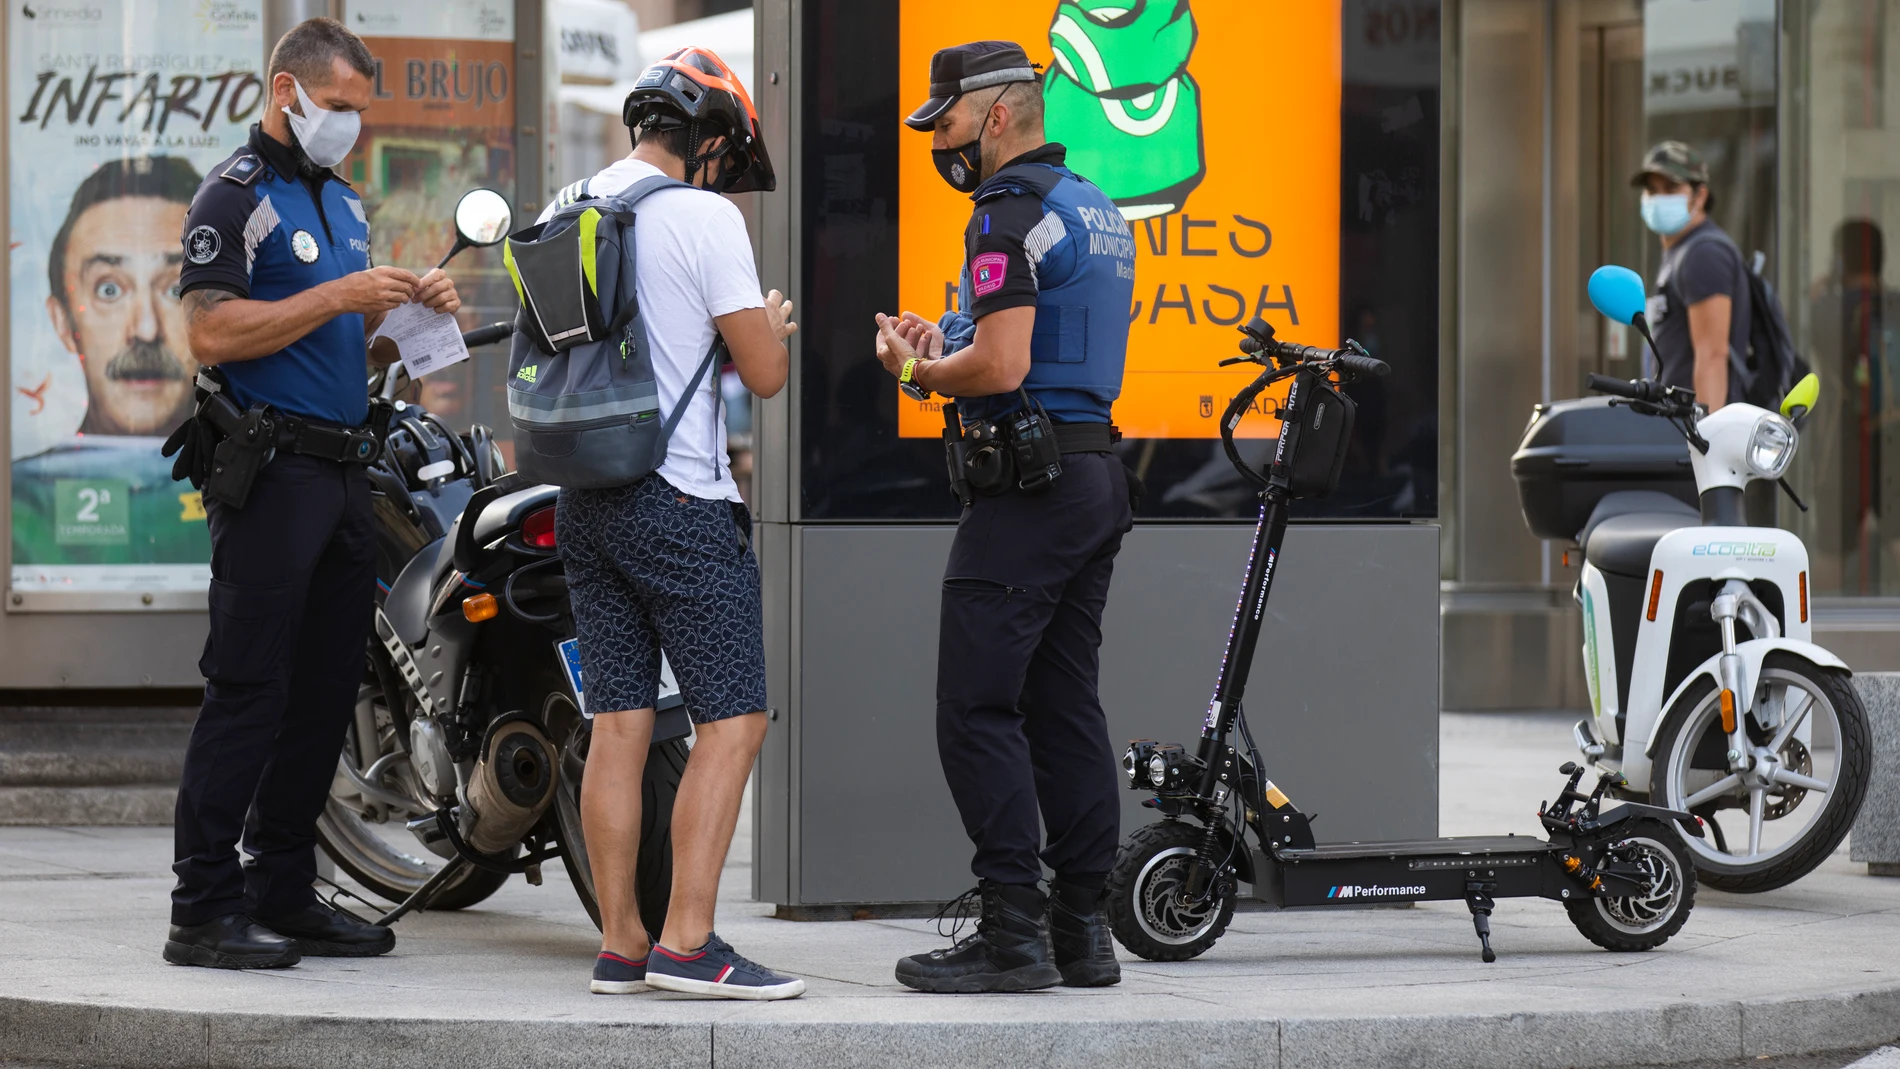 Un joven requerido por la Policia Municipal para que les muestre la documentación de su patinete eléctrico